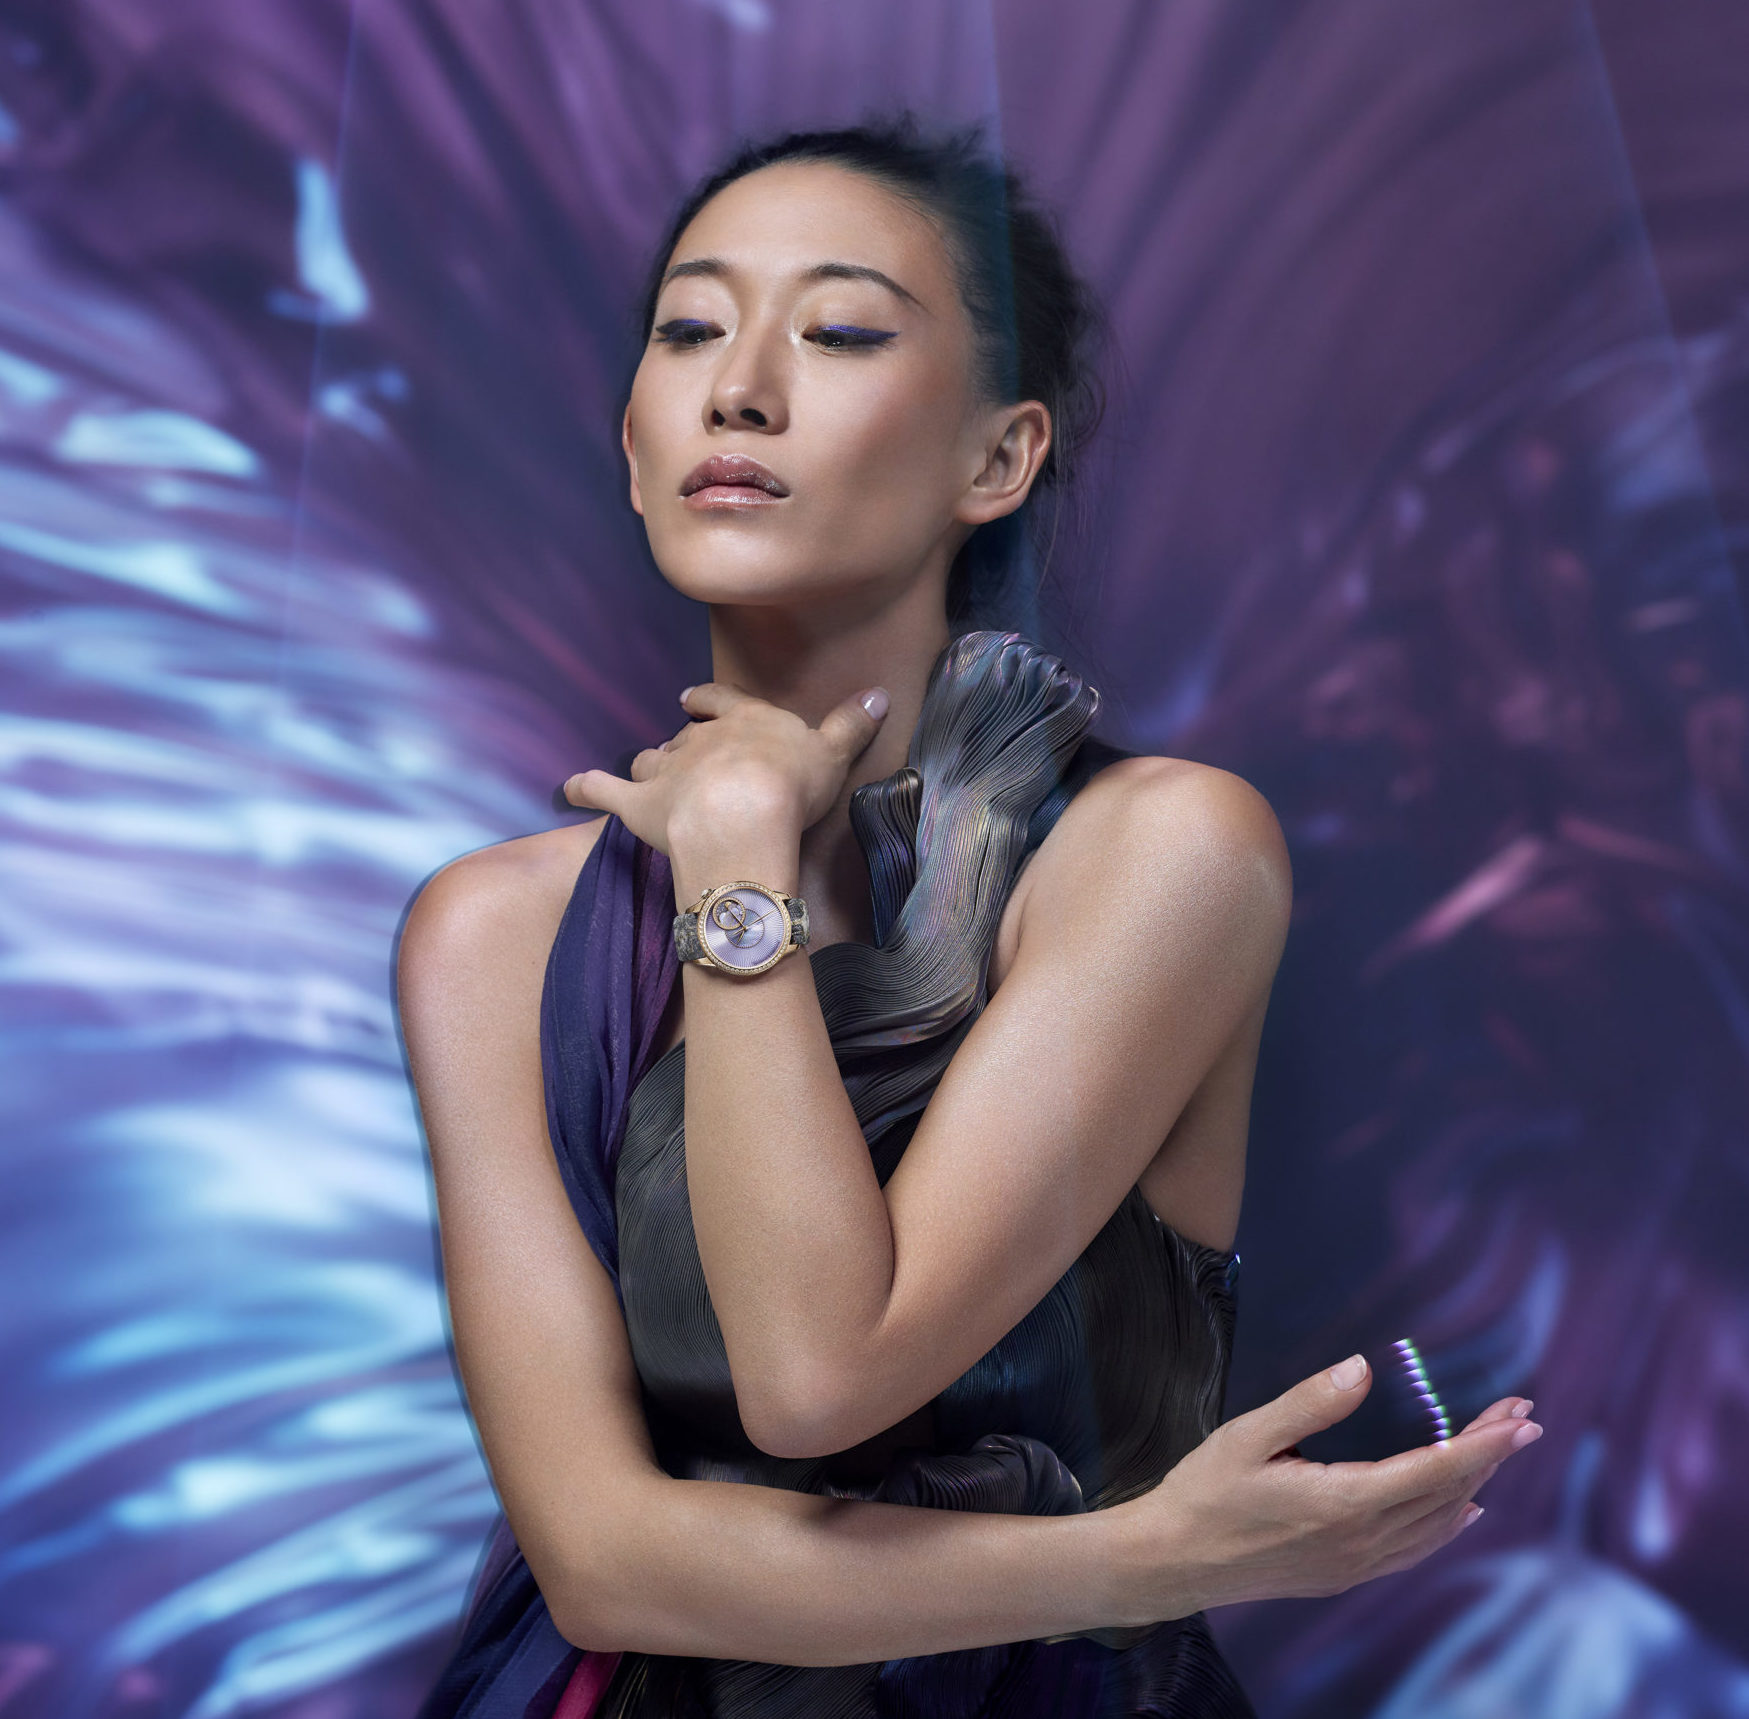 La créatrice de haute couture Yiqing Yin s’allie à la marque suisse Vacheron Constantin